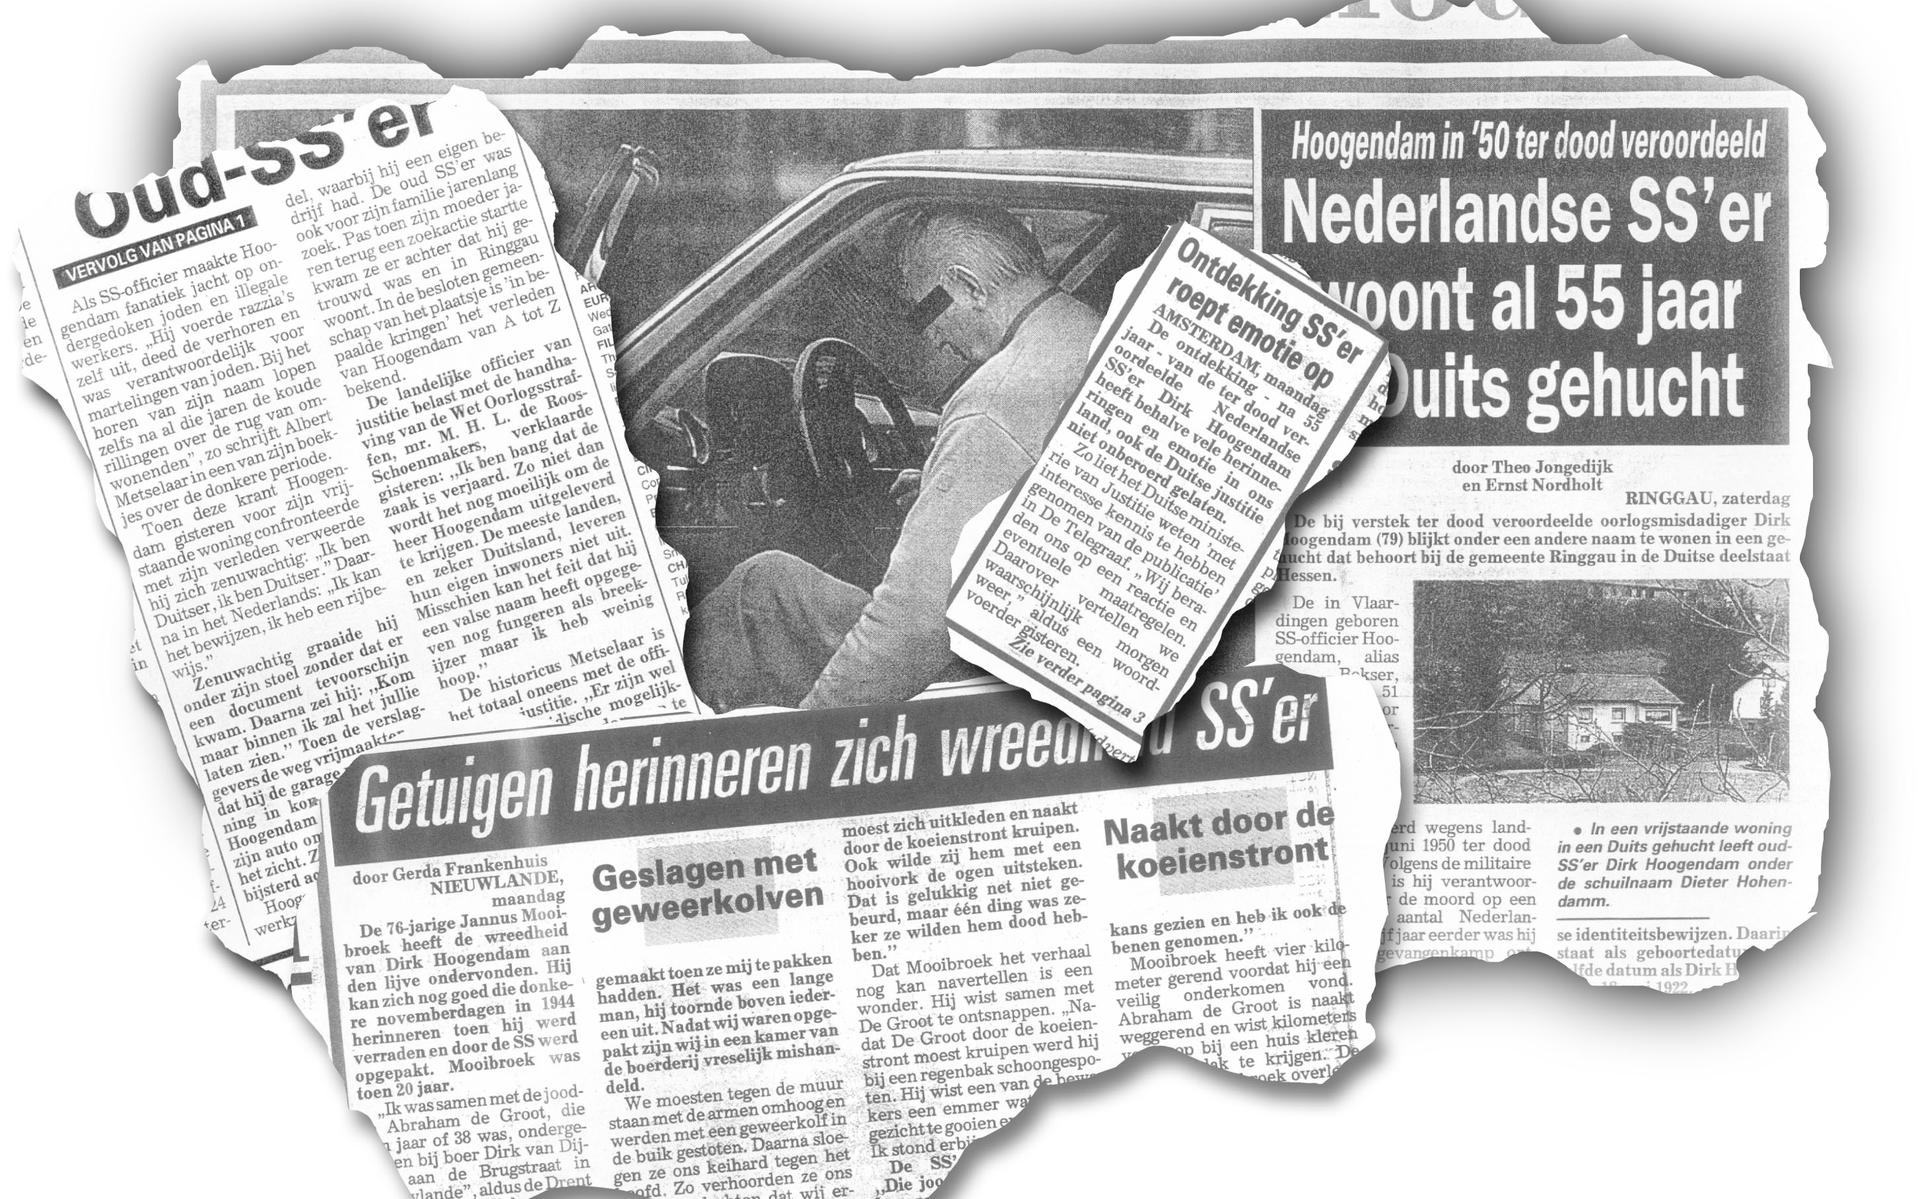 De krantenkoppen in de periode van de ontdekking van Hoogendam.